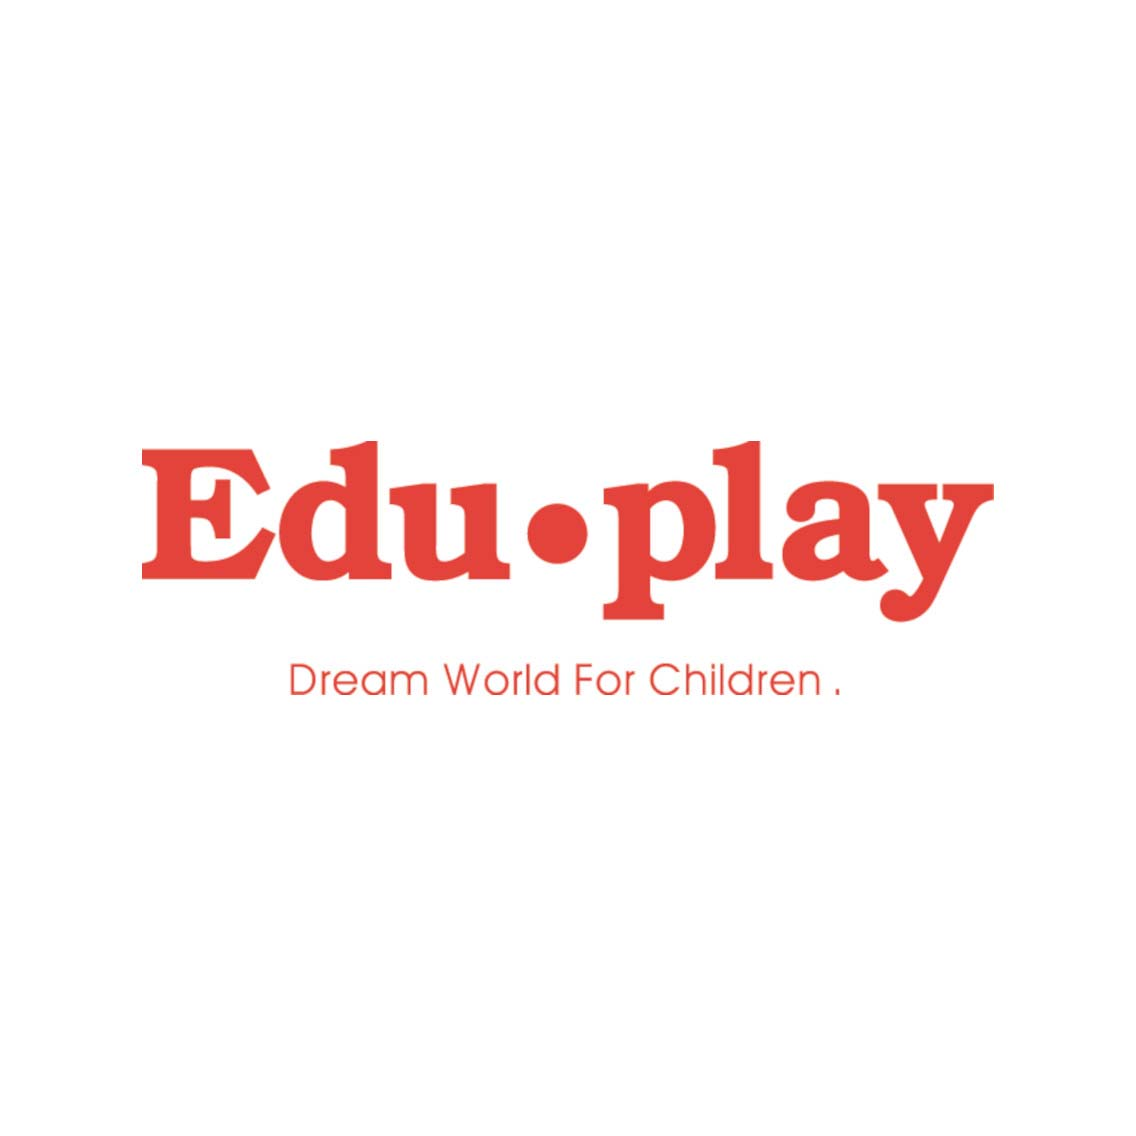 Edu・play Dream World For Children エデュプレイは韓国のベビーサークル老舗メーカーです。